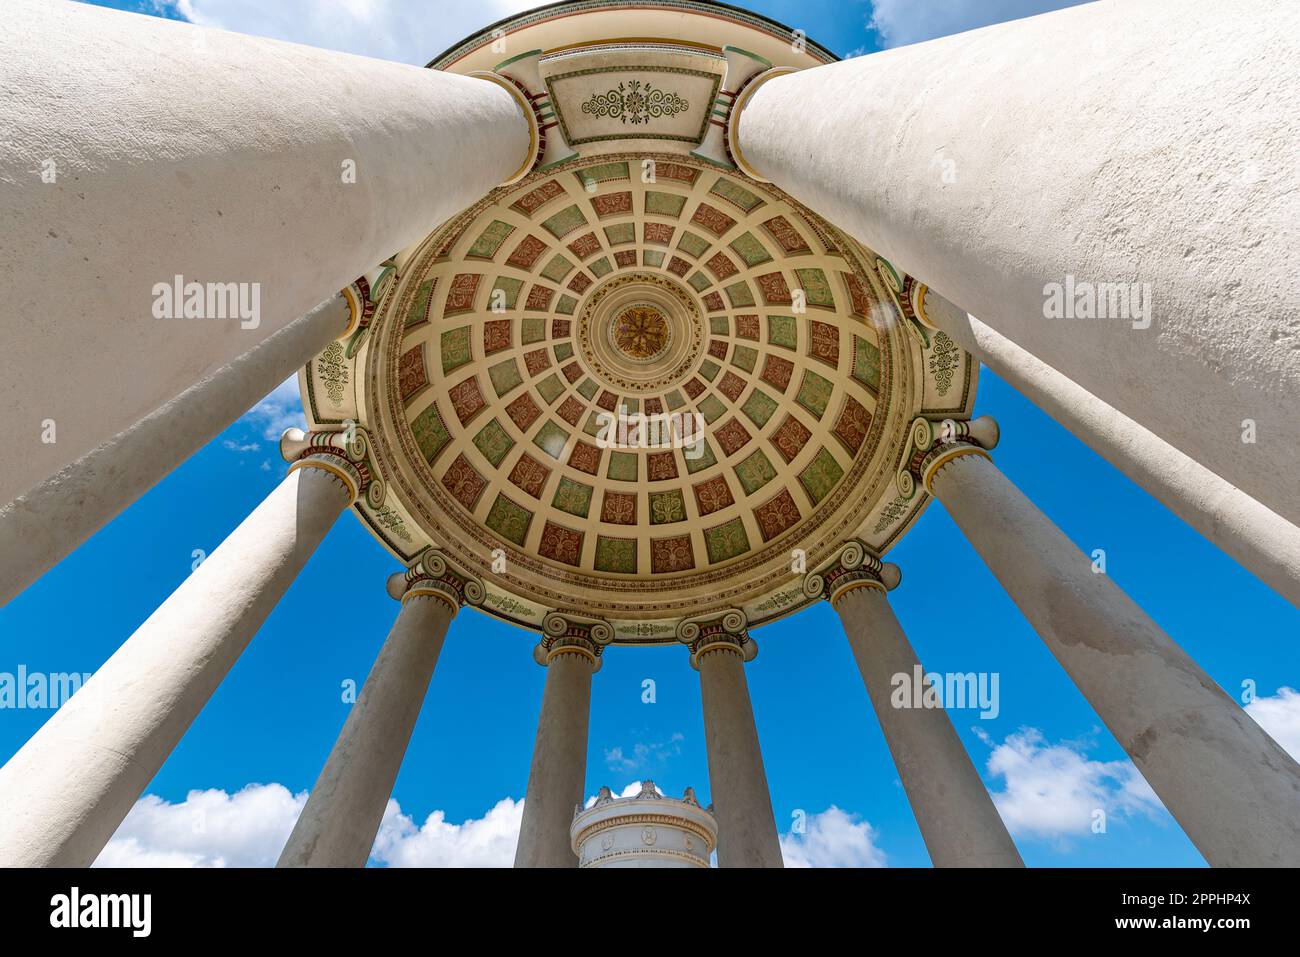 Die Kuppel und Säulen des Monopteros-Tempels im Englischen Garten in München in einem extremen Weitwinkel von unten, unter blauem Himmel und heller Wolkendecke Stockfoto